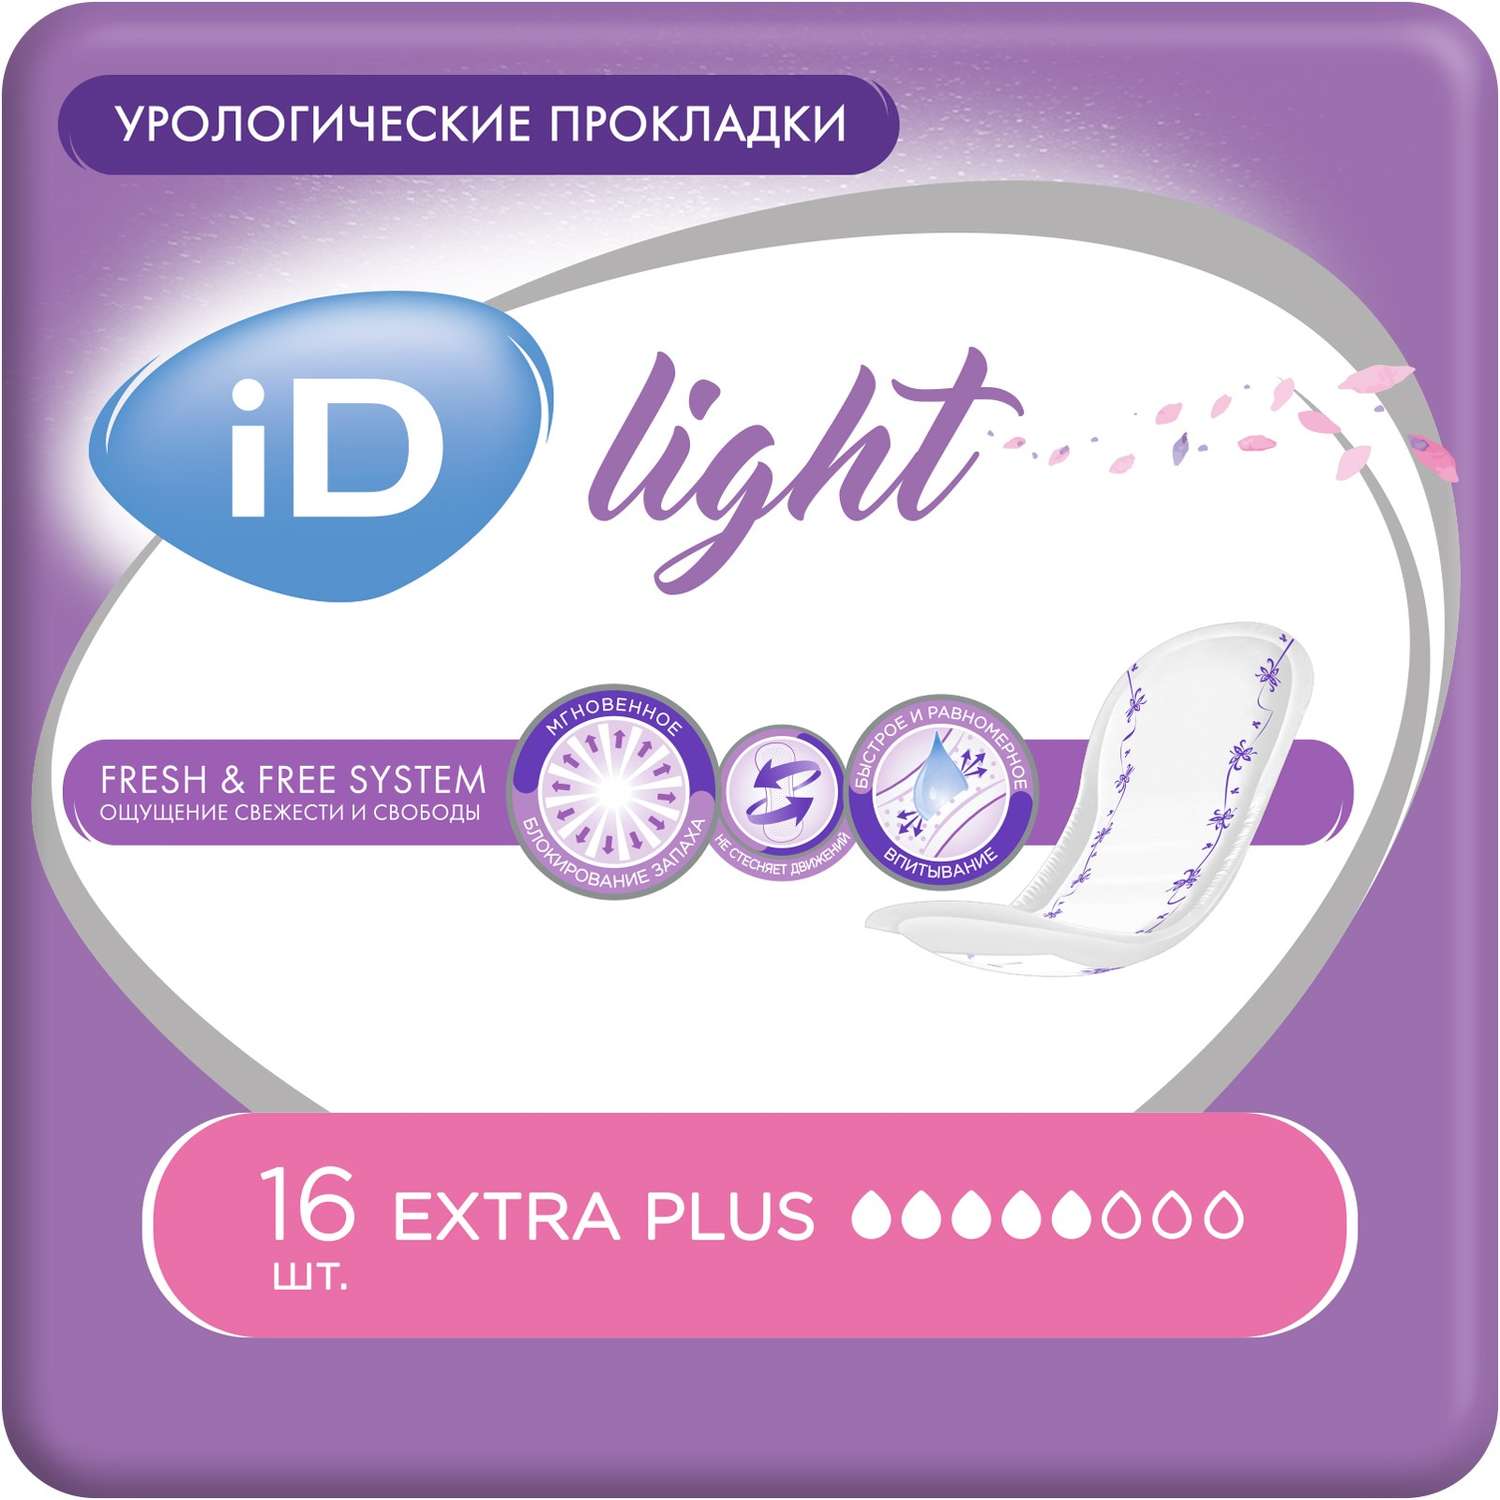 Прокладки урологические iD LIGHT Extra plus 16 шт. - фото 1